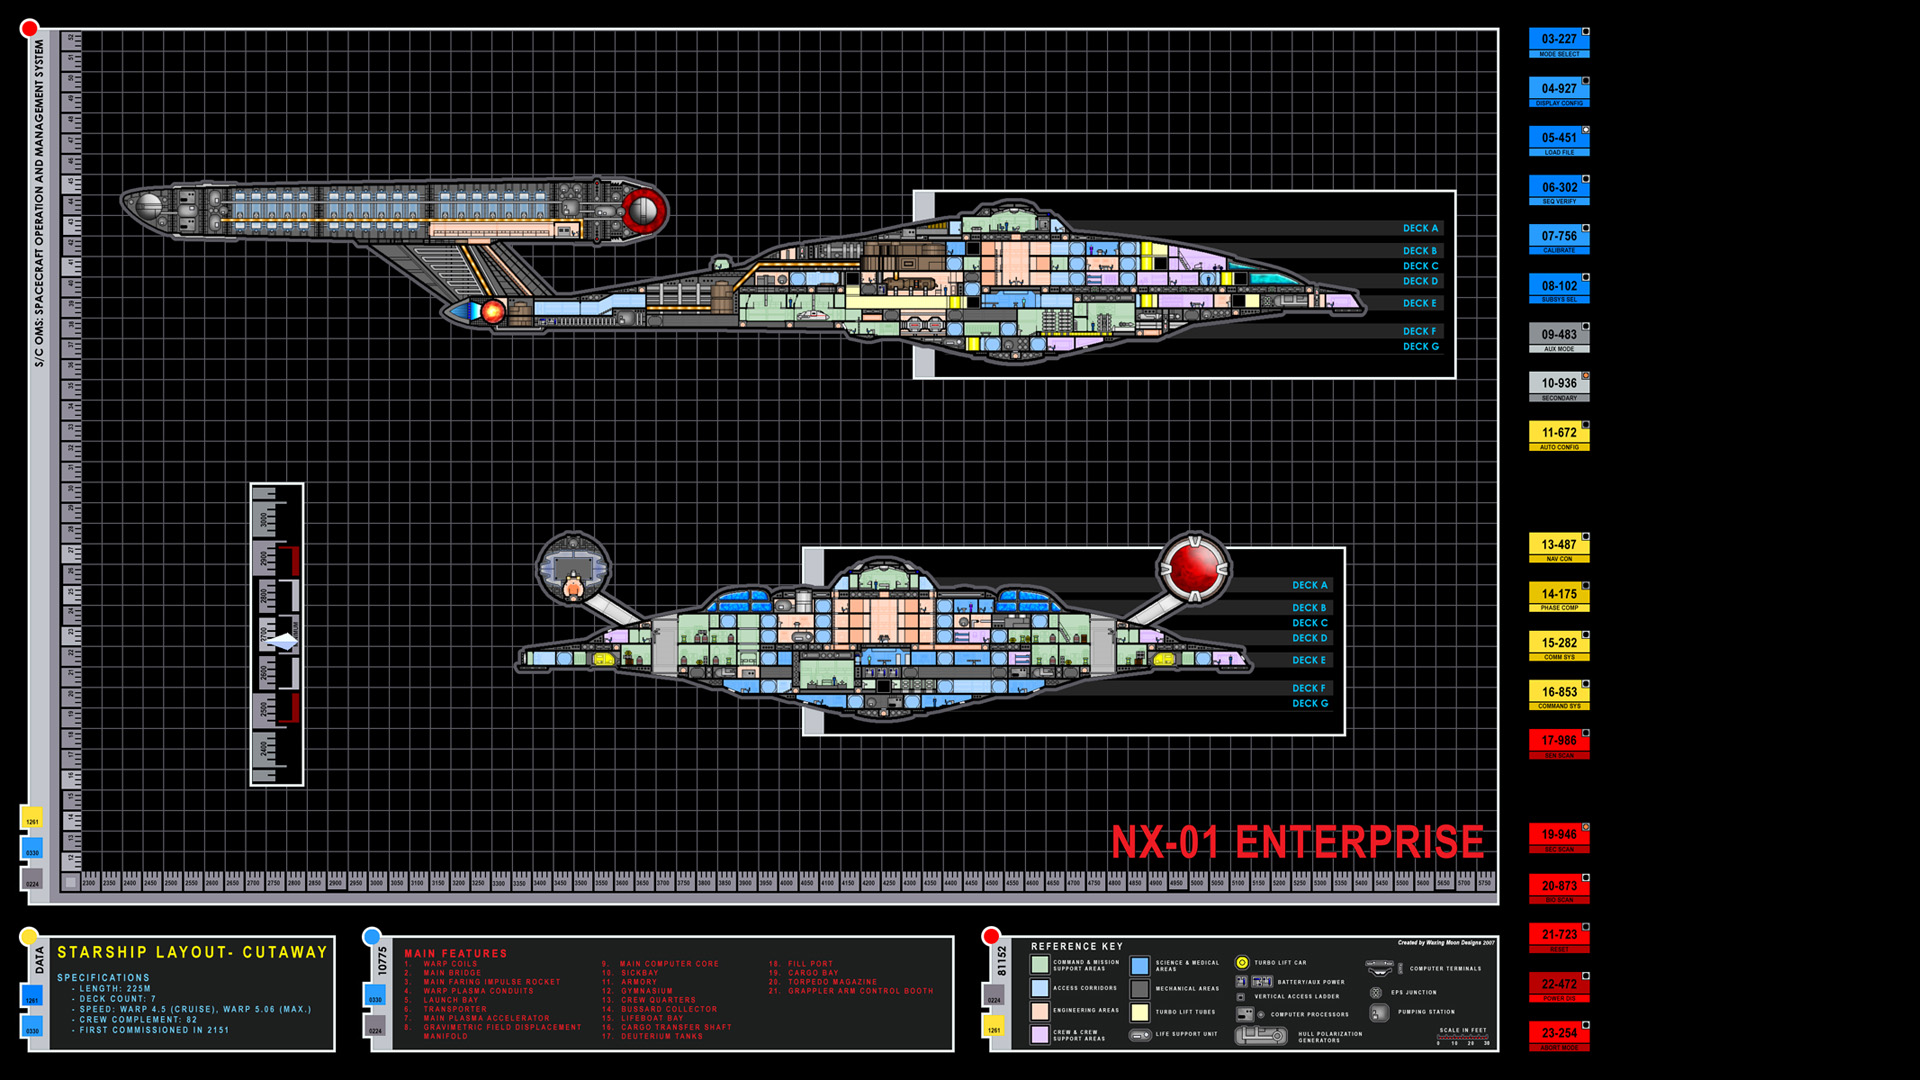 звездный путь, схема, Star Trek схемы, Star Trek Enterprise - обои на рабочий стол